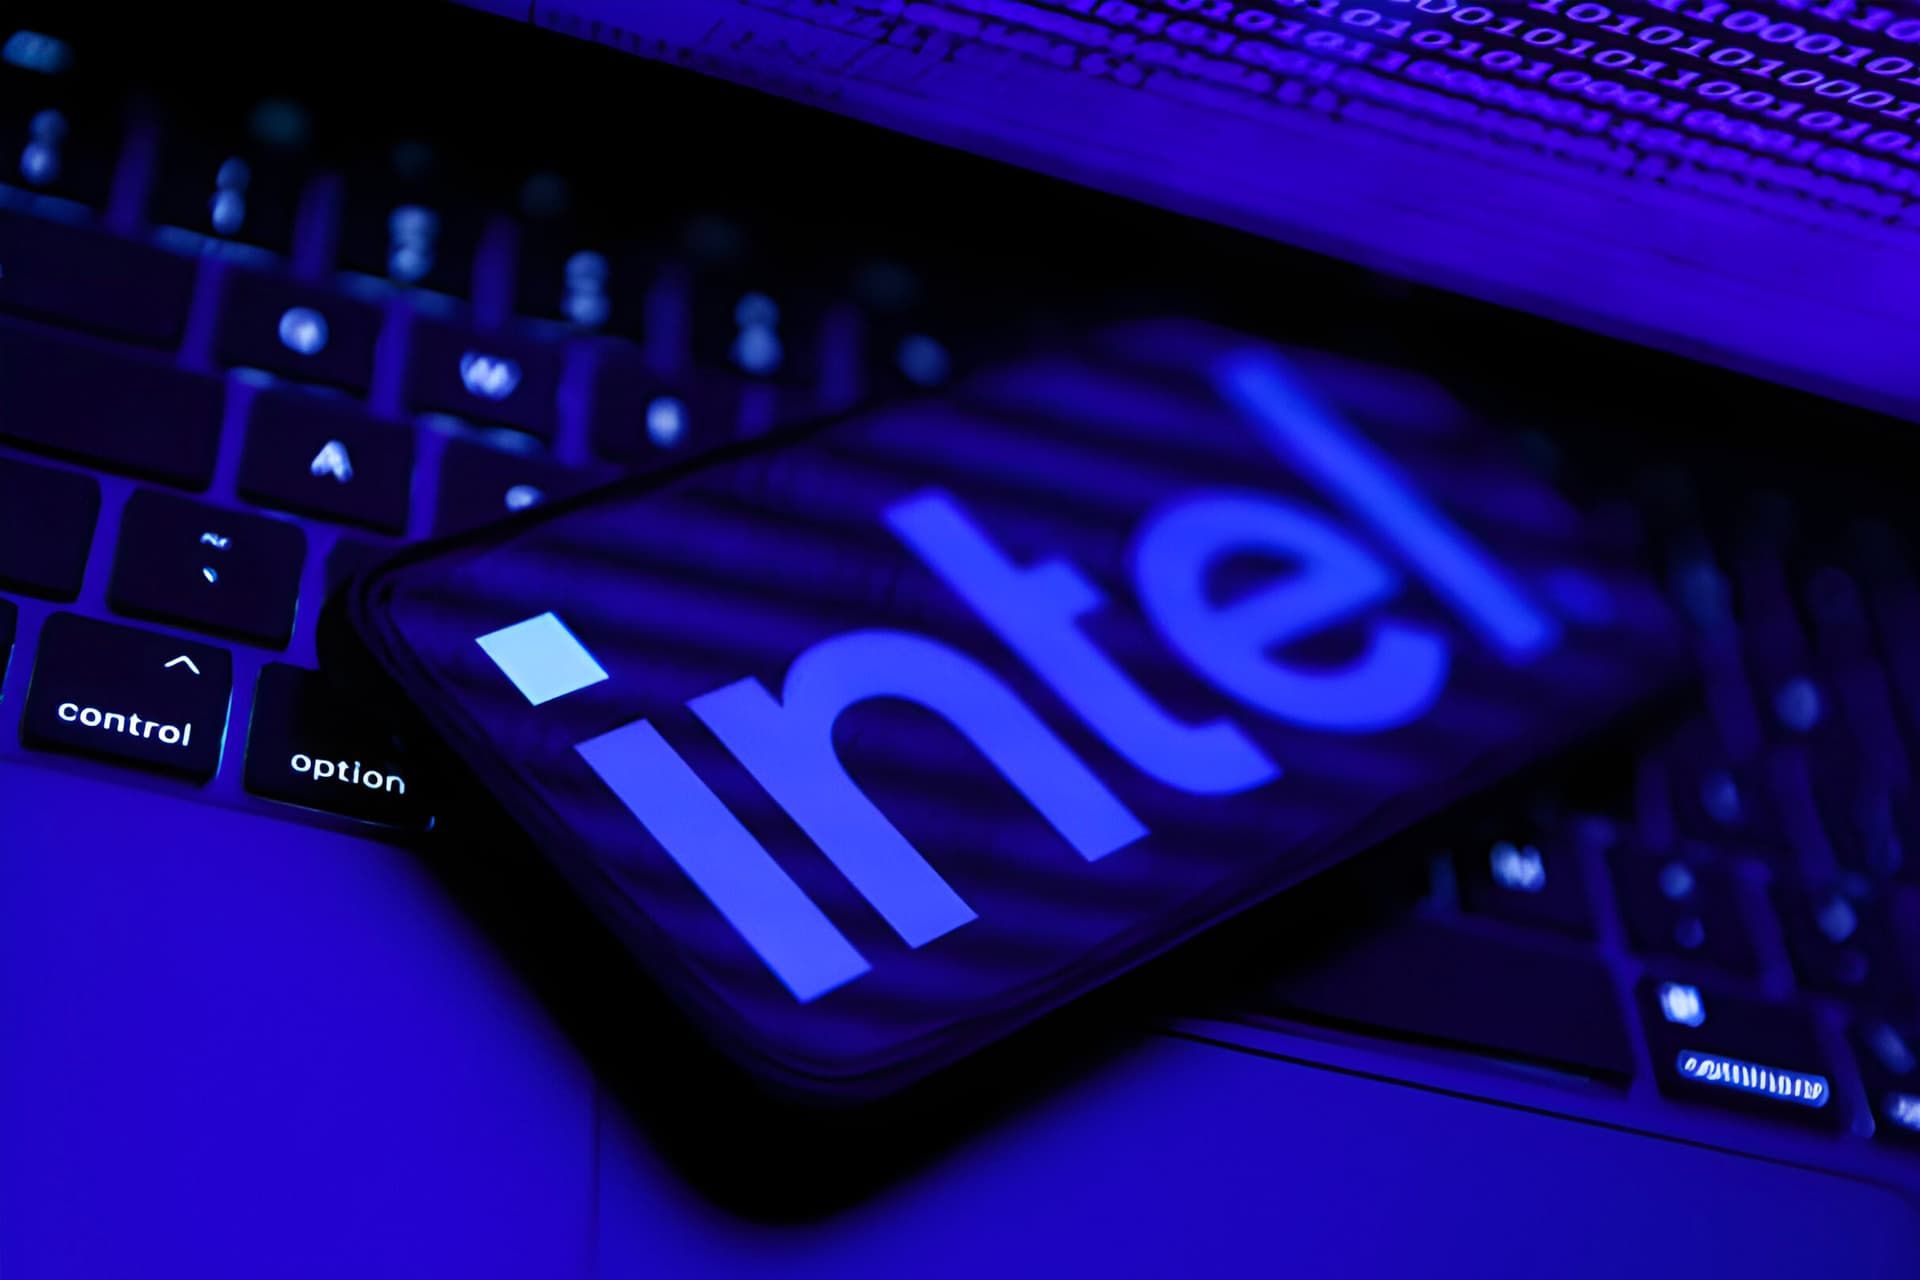 لوگو اینتل / Intel روی نمایشگر موبایل روی کیبورد لپ تاپ